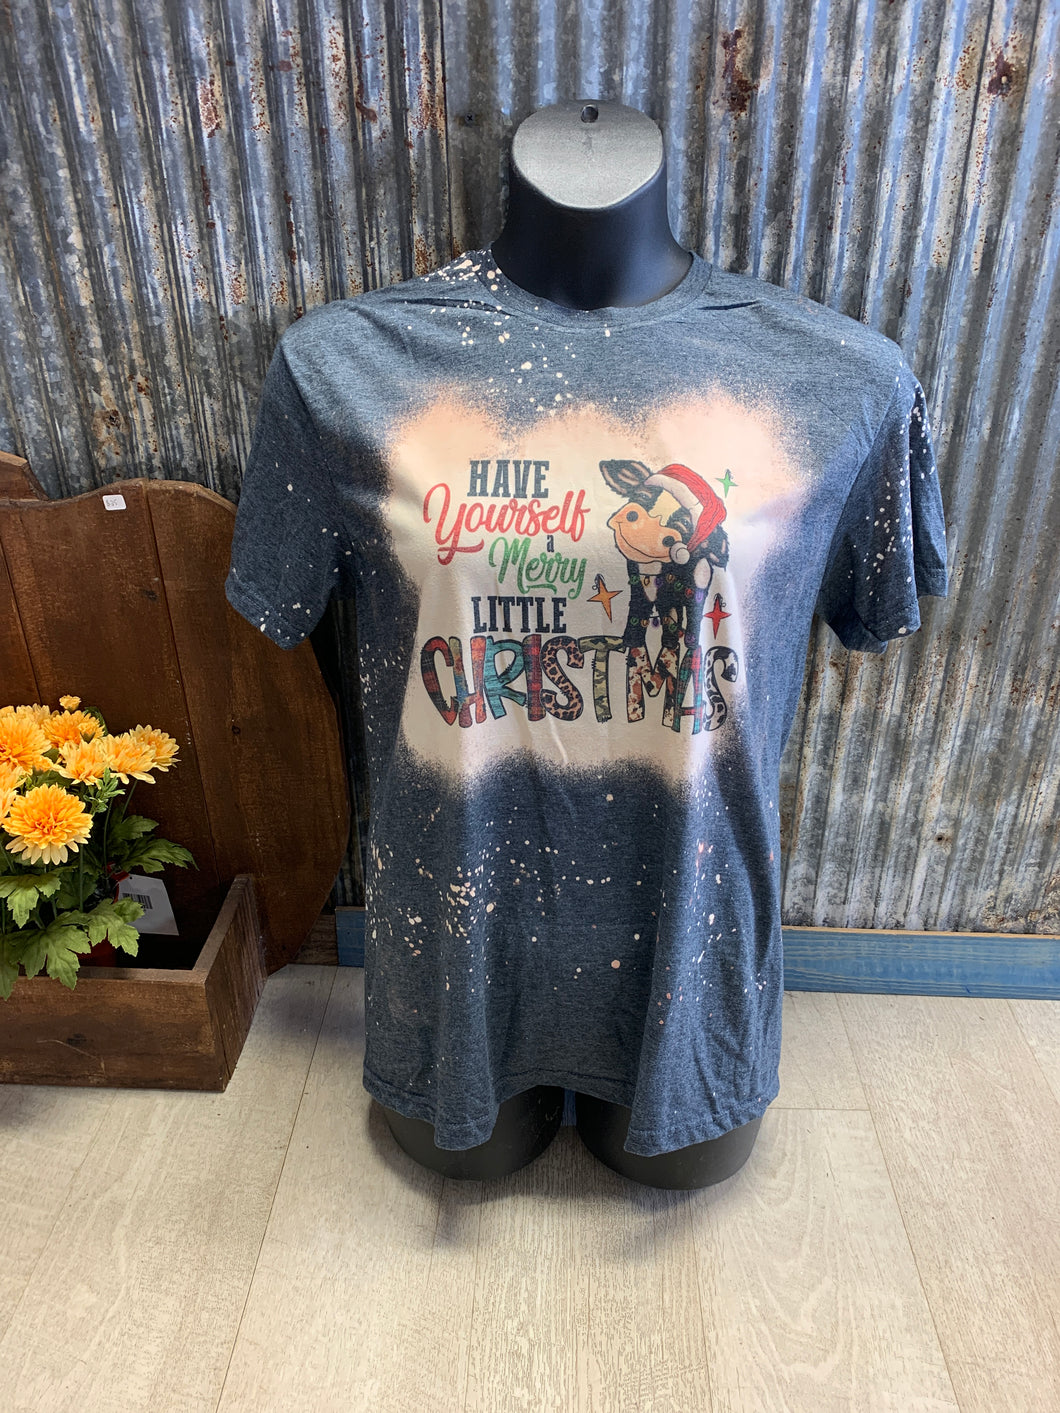 Have a merry little Christmas bleach t-shirt